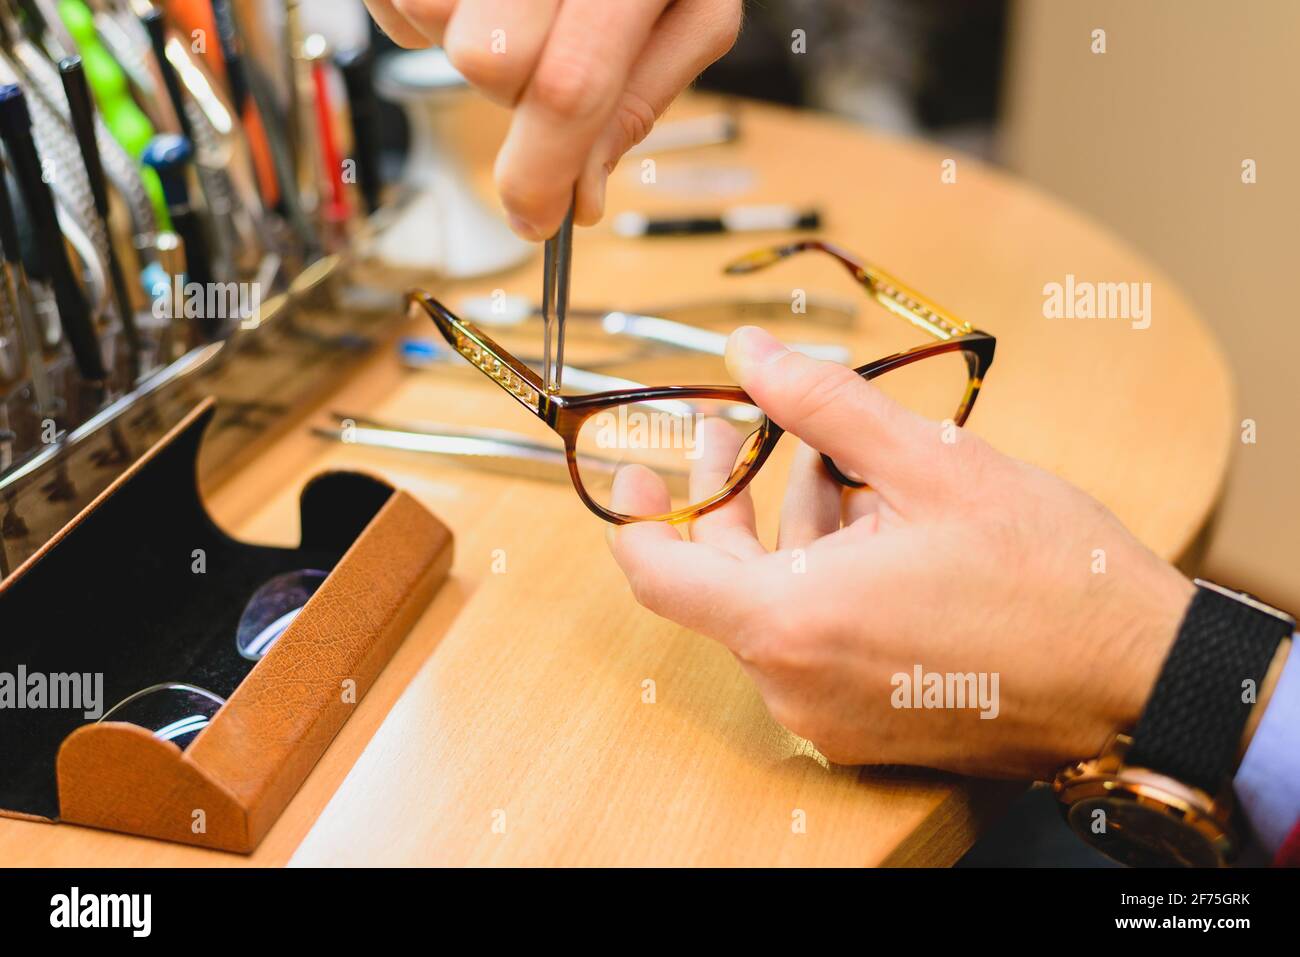 Optician repairing eye glasses stock photo Stock Photo